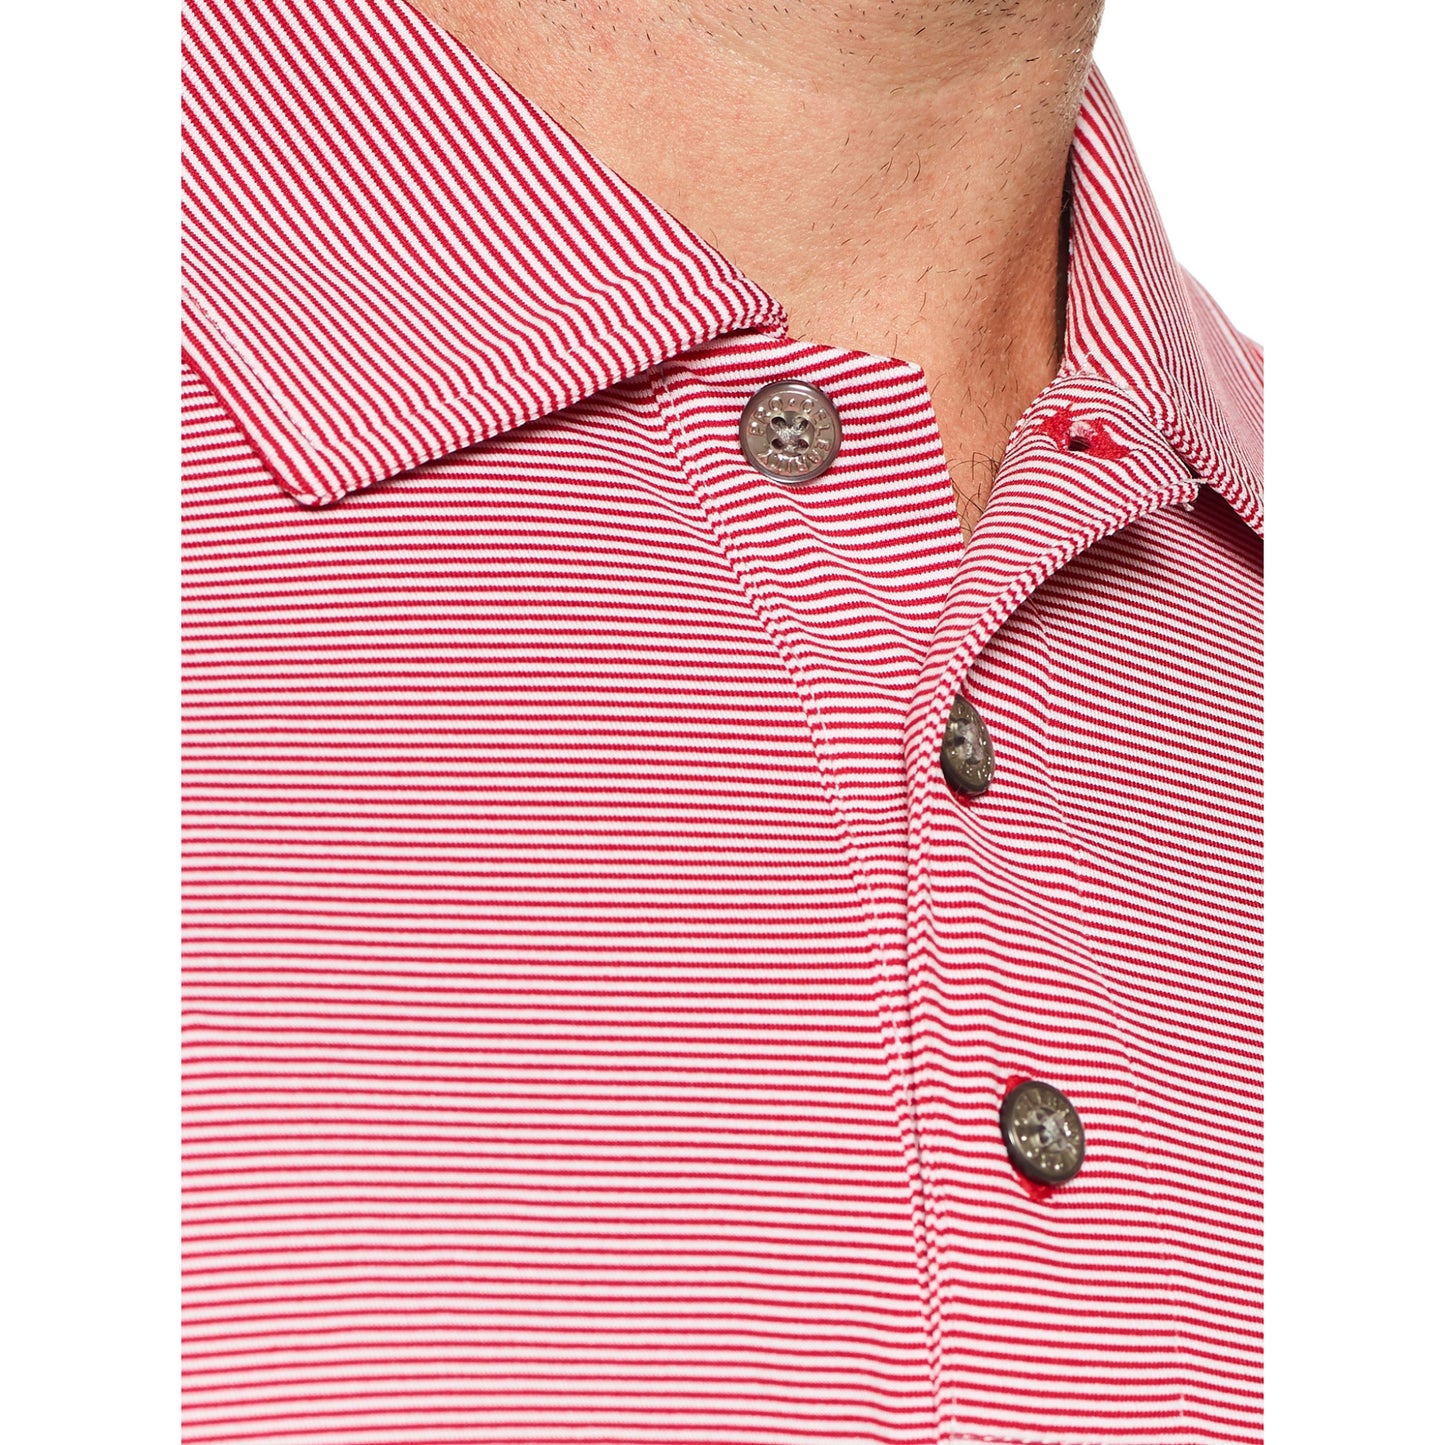 Pro Celebrity Men's Windsor Mini-Feeder Stripe Polo Shirt